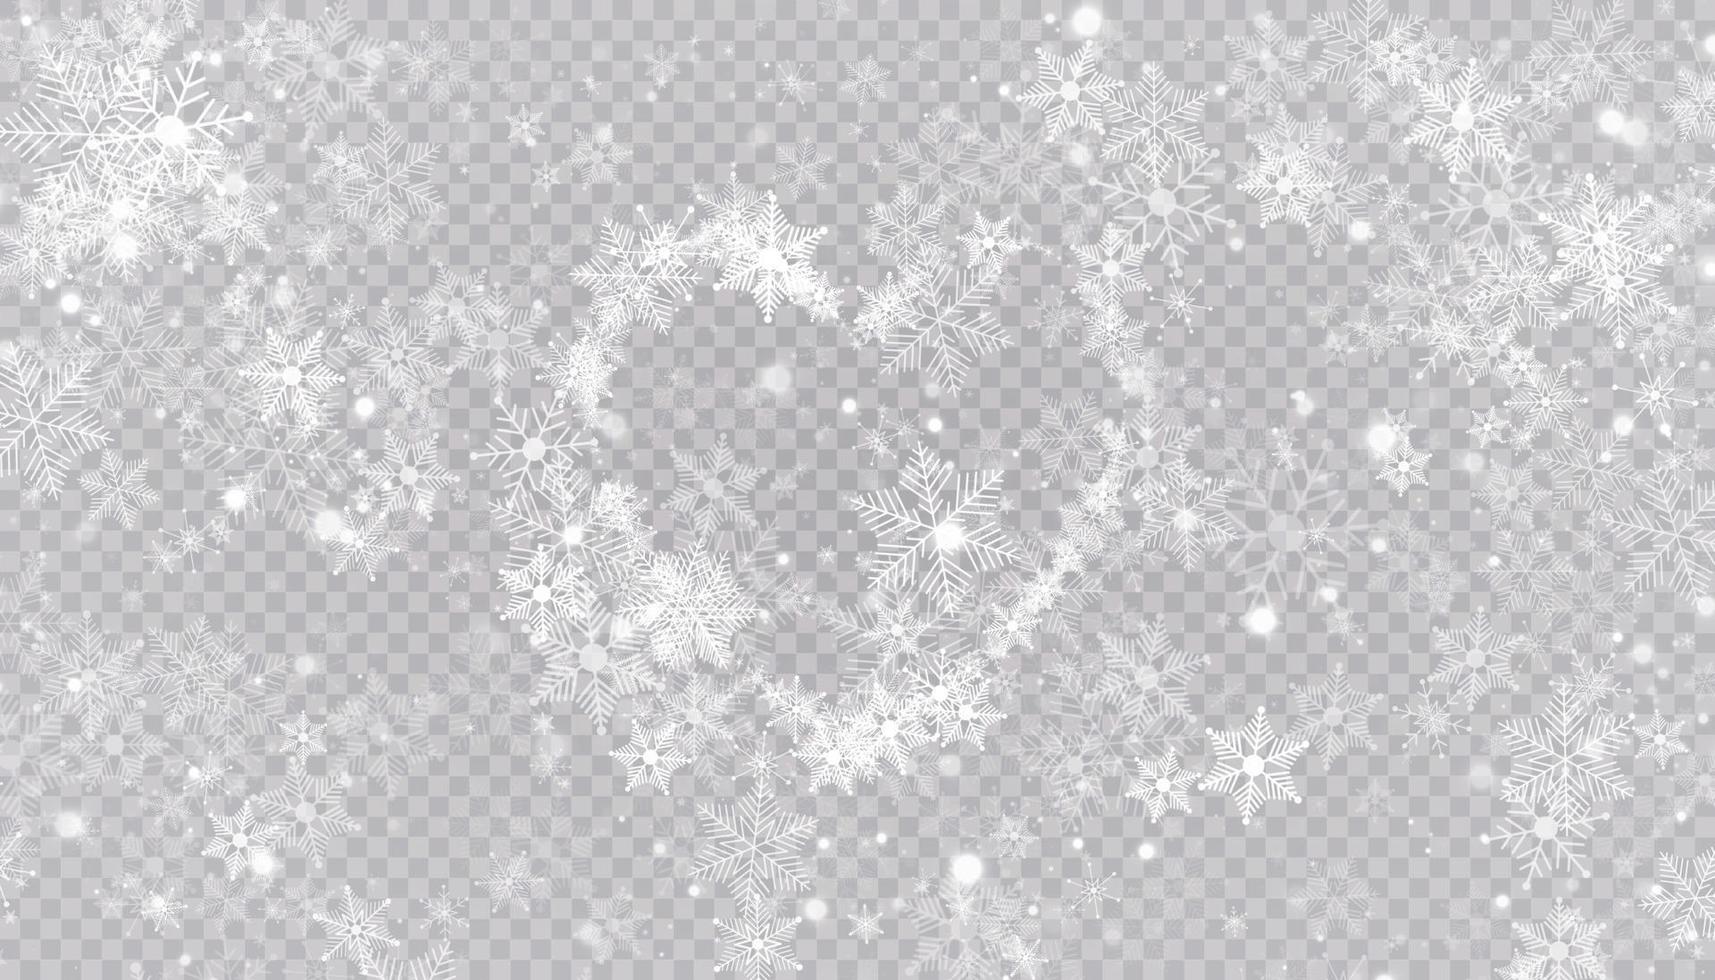 hartvormige sneeuwvlokken in een vlakke stijl in doorlopende tekenlijnen. spoor van wit stof. magische abstracte achtergrond geïsoleerd op de achtergrond. wonder en magie. vector illustratie plat ontwerp.